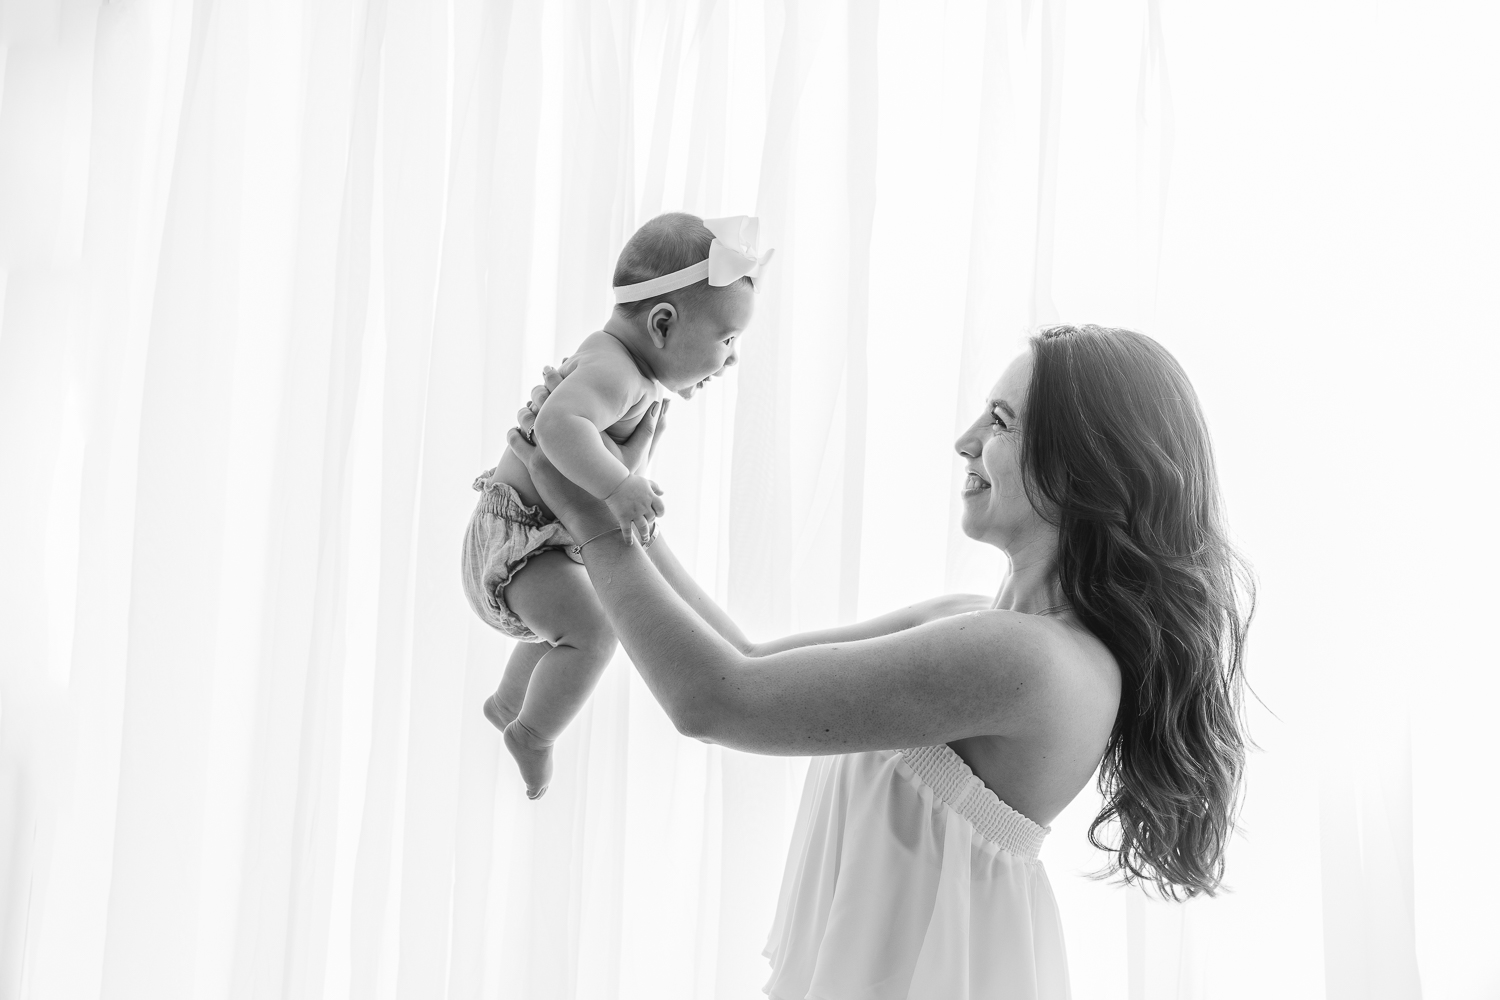 Carli_Motherhood_Session_NicoleHawkinsPhotography_UWS_2019_Web-12.jpg